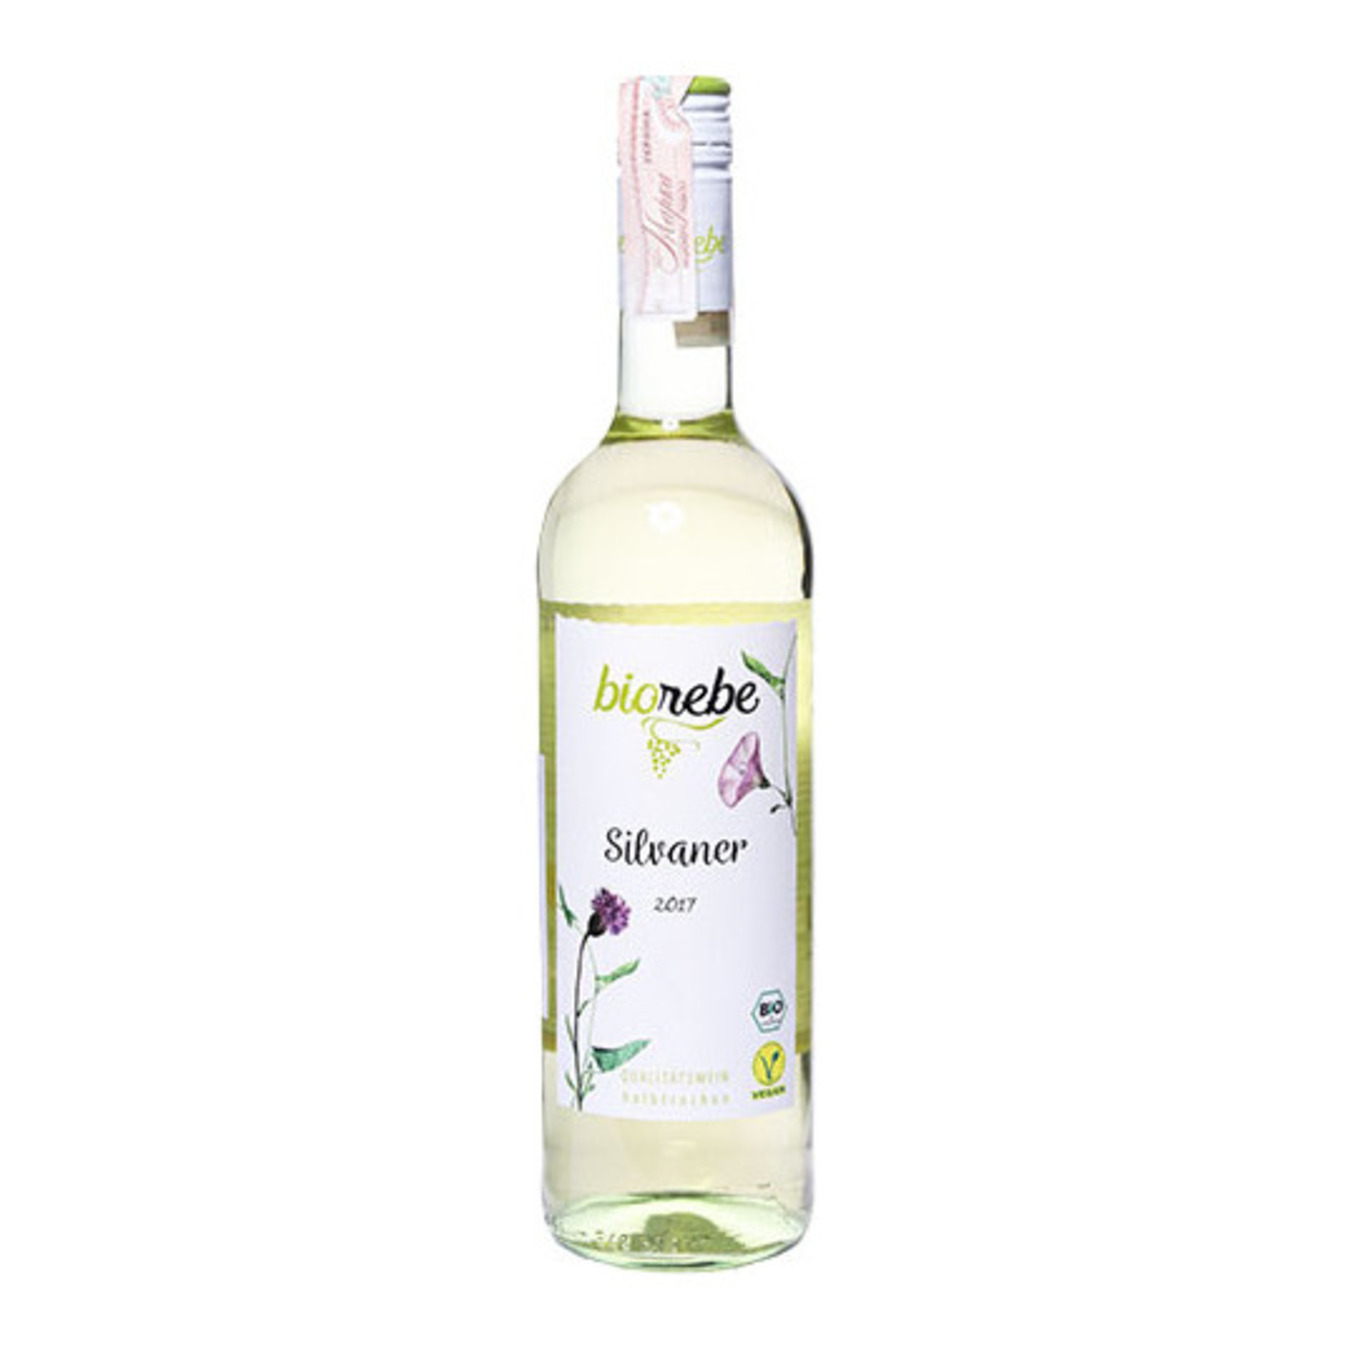 BioRebe Silvaner white semi-dry wine 11% 0,75l